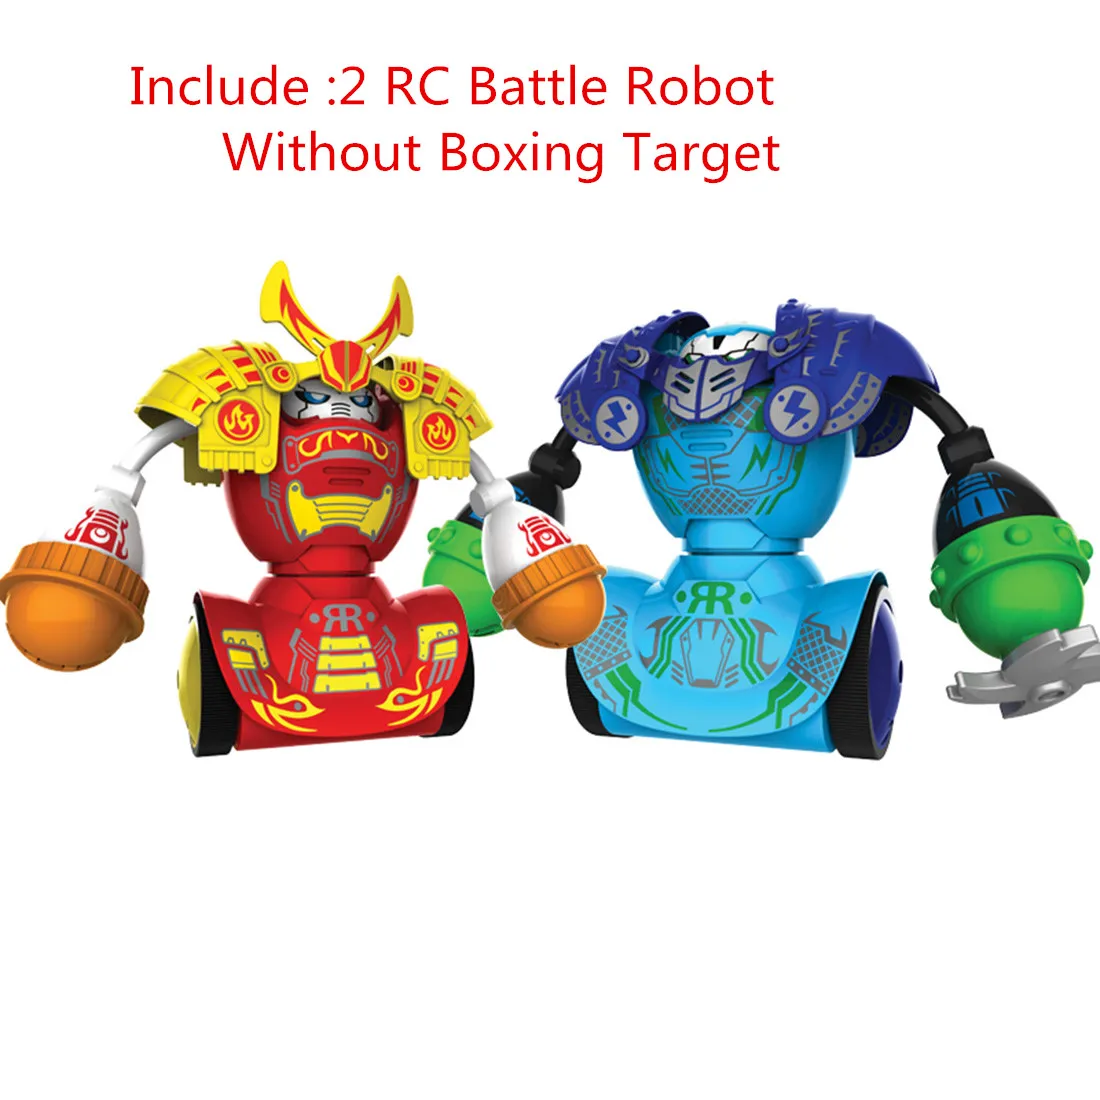 Горячие RC боксерские роботы интеллектуальный пульт дистанционного управления боевая игра игрушка боевой робот без бокса цель подарки на день рождения для мальчиков - Цвет: as shown